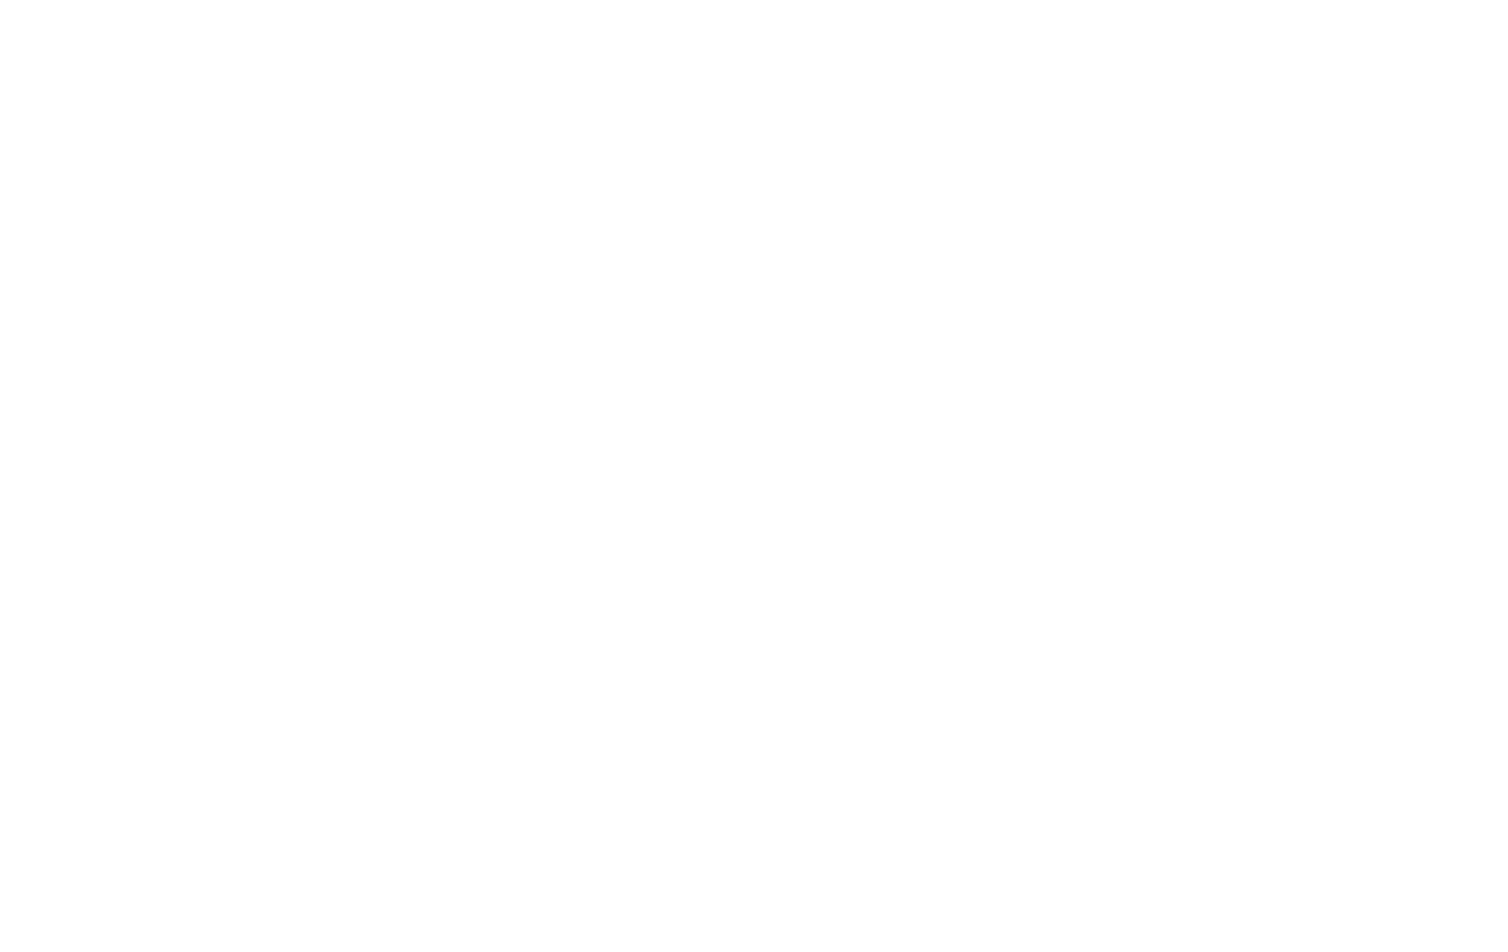 Metamor_spell